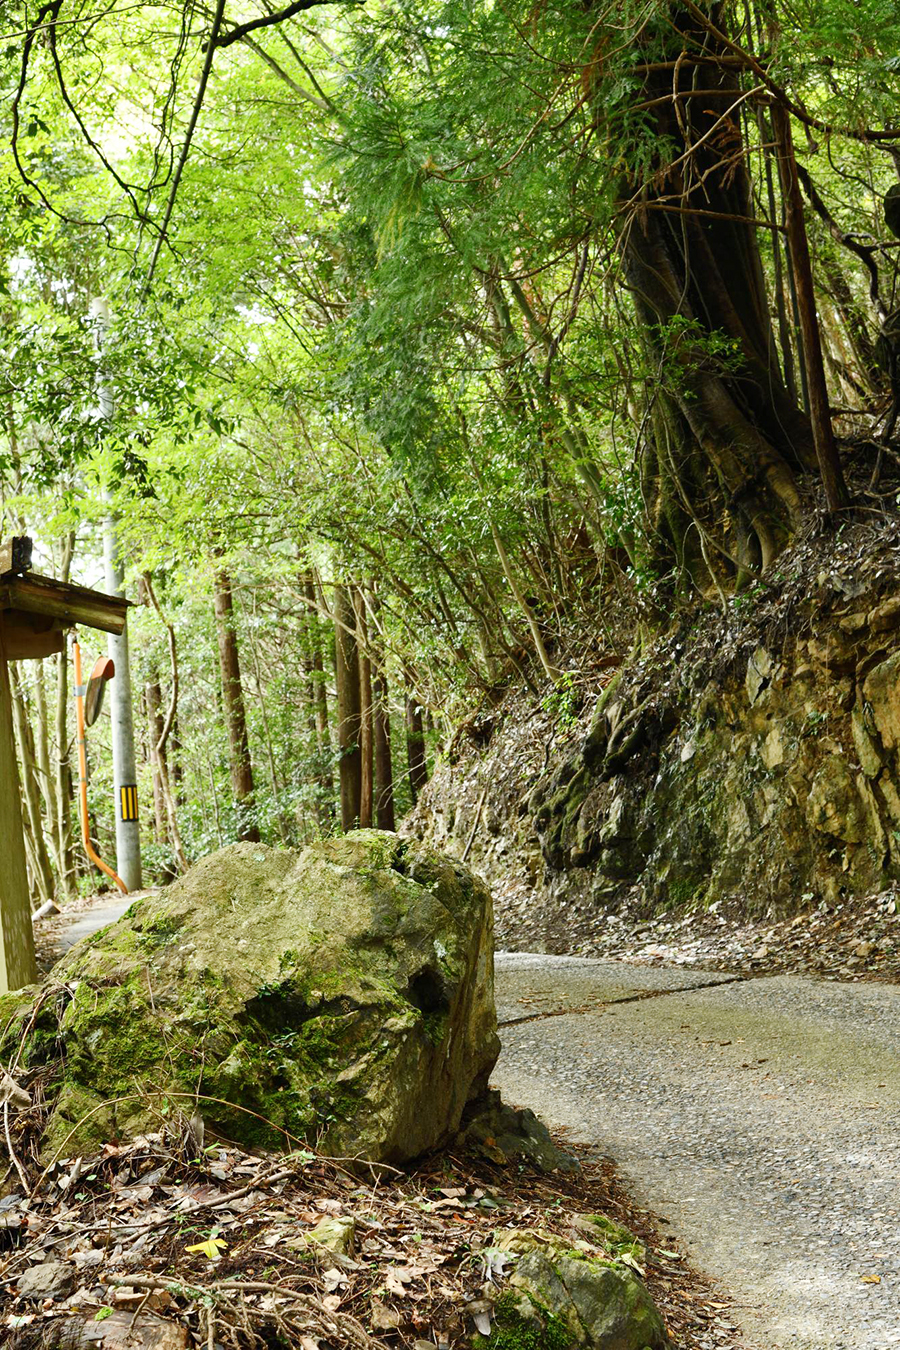 日本最後の仇討ちがあった黒石。両側の岩陰に隠れて待ち伏せしたとされる